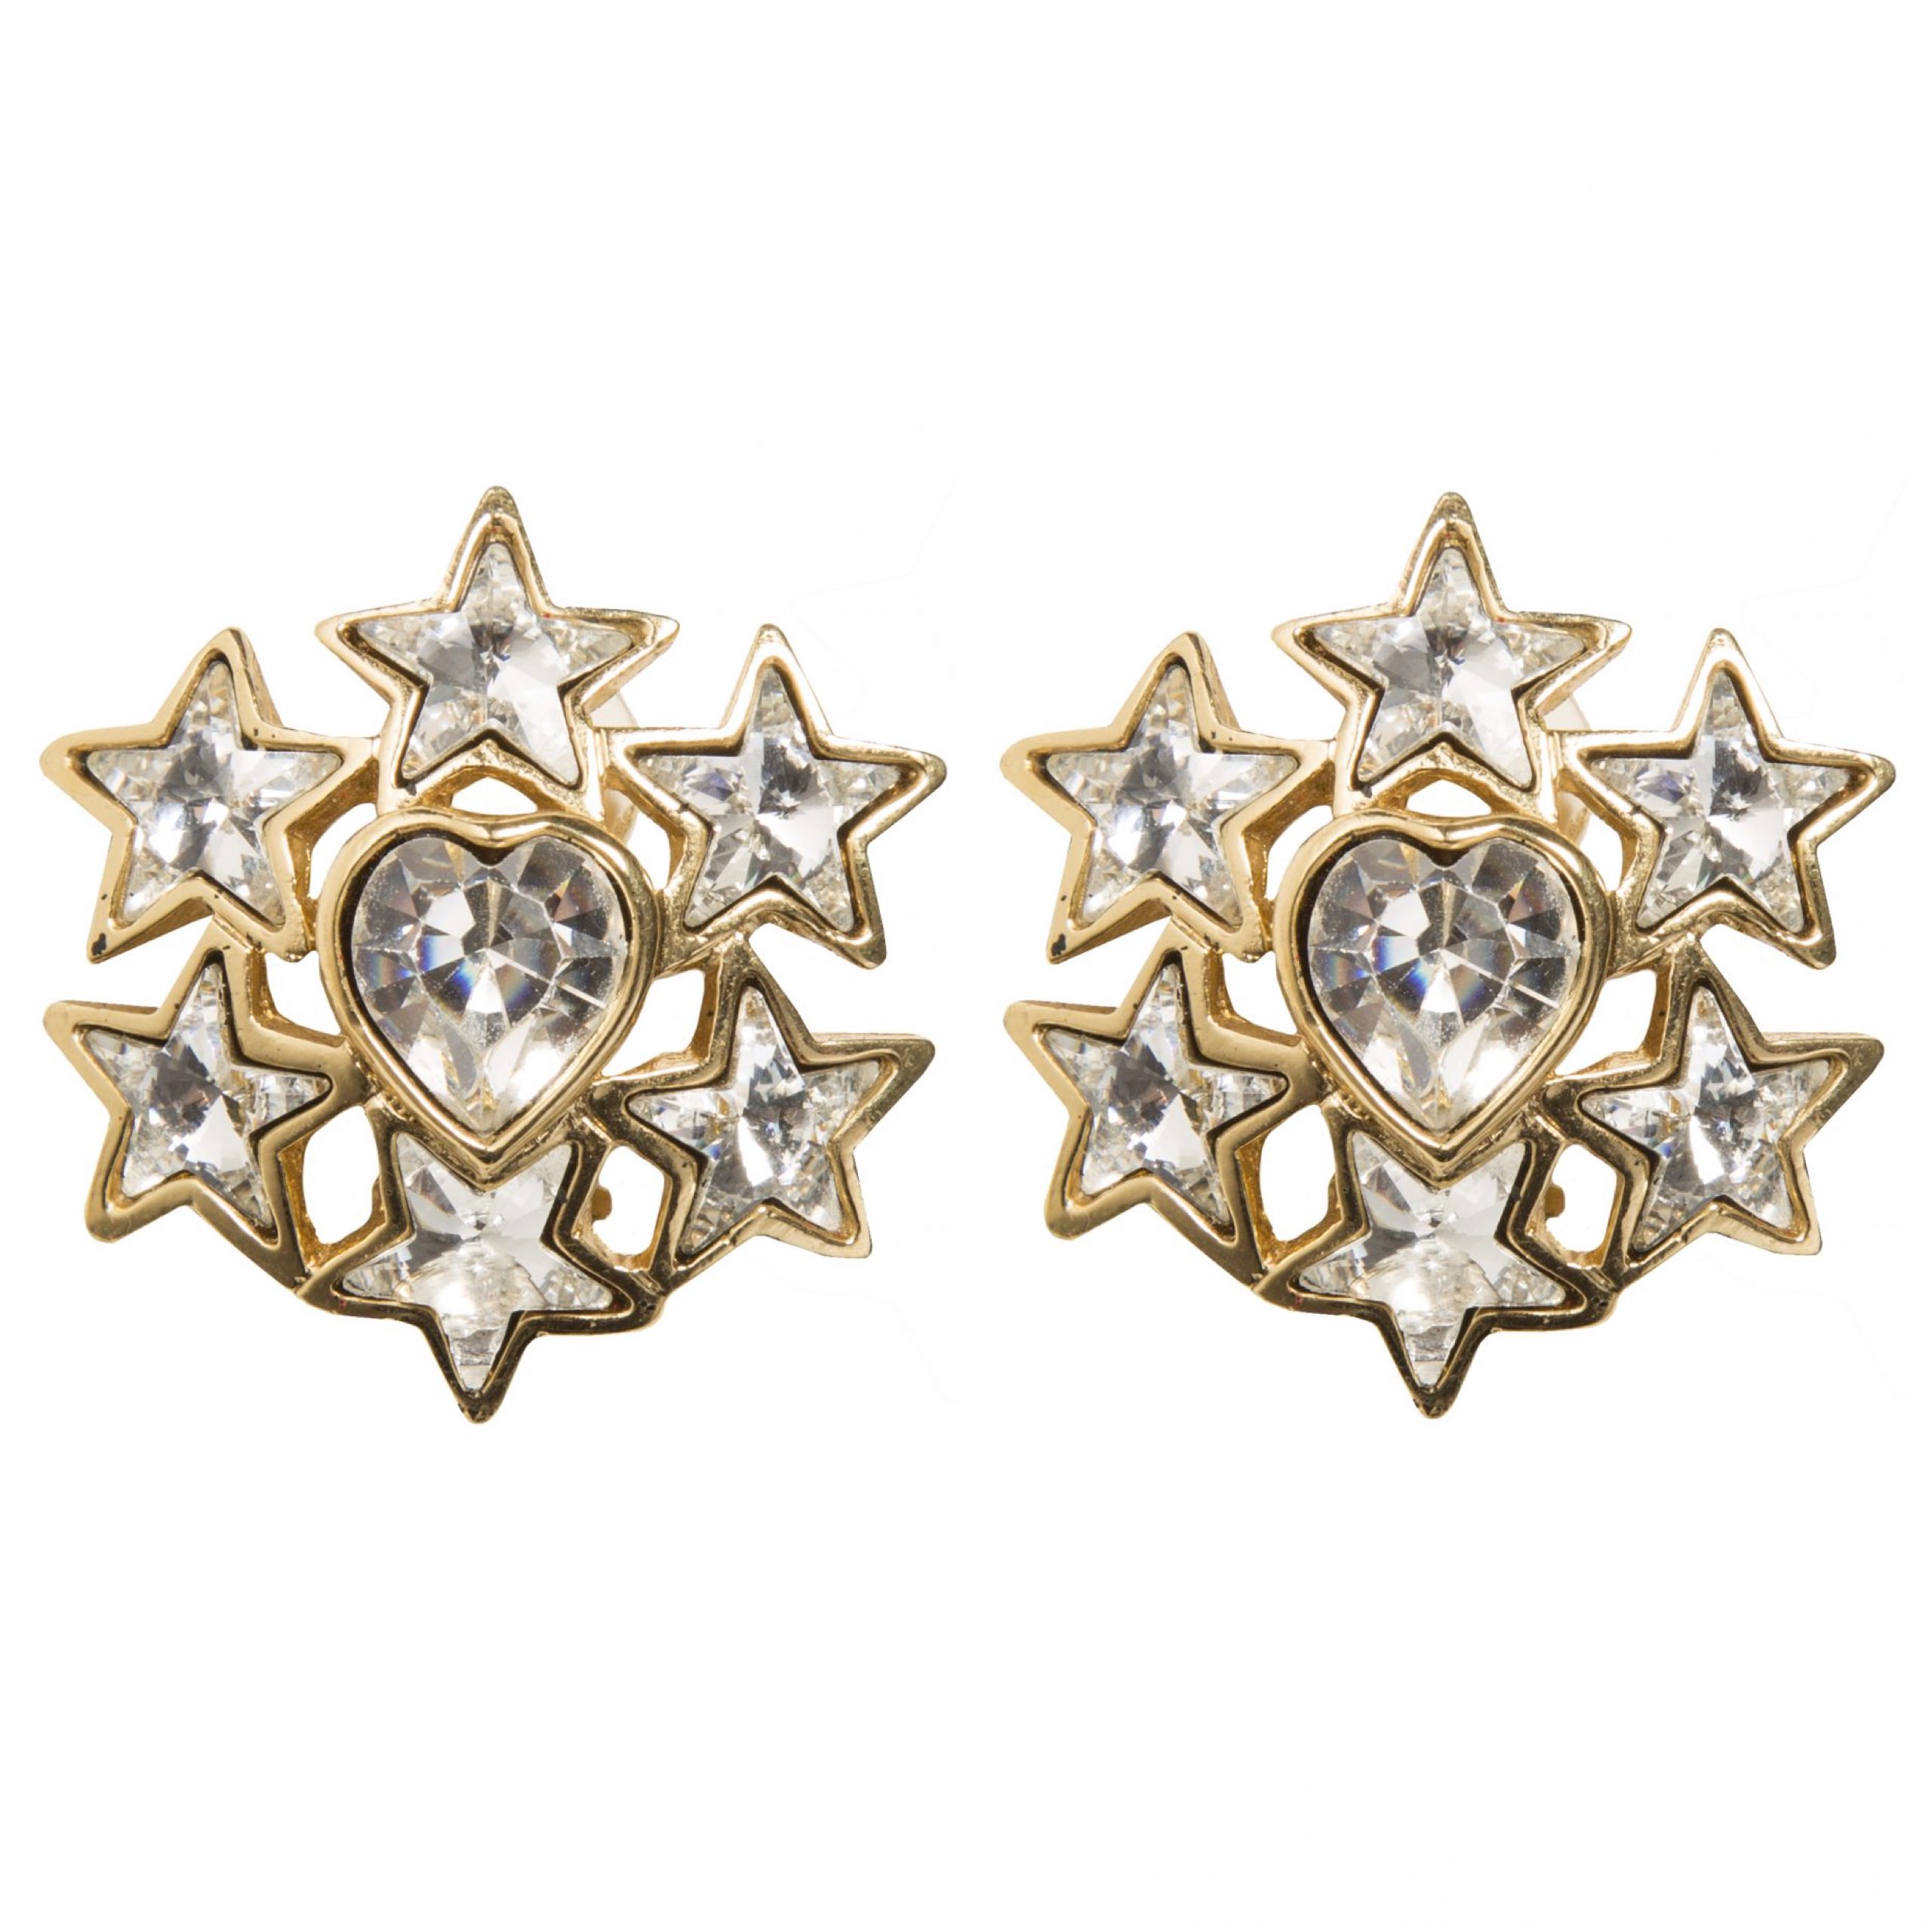 Vintage star motif crystal earrings